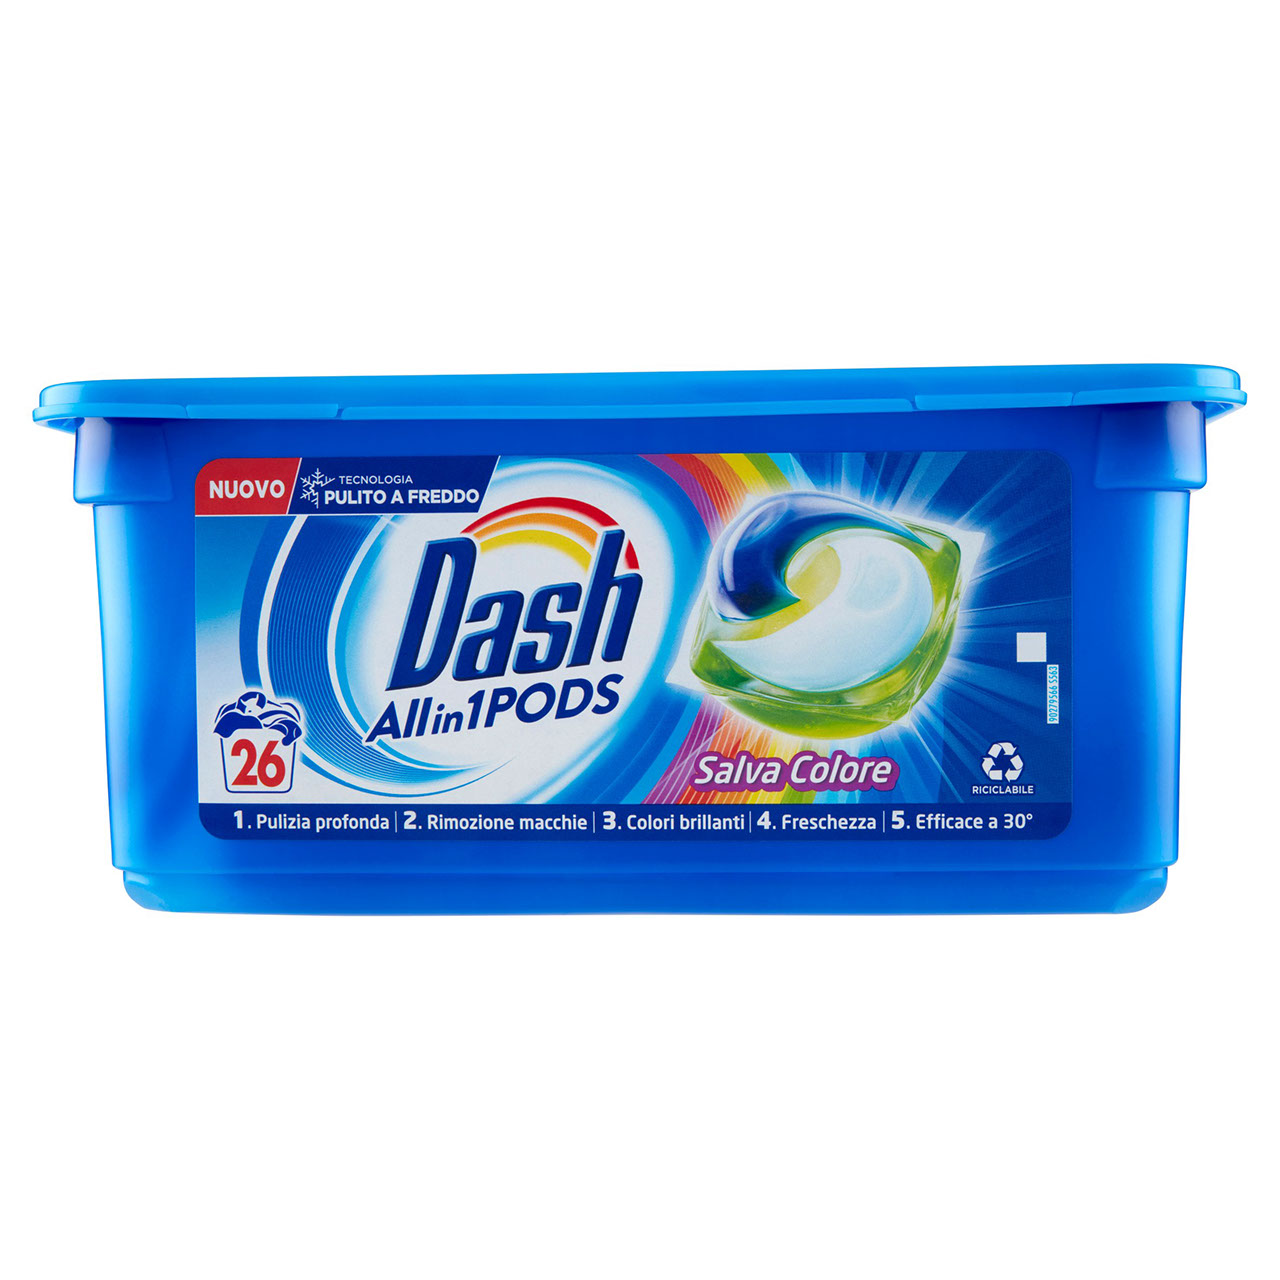 Dash PODS Allin1 Detersivo Lavatrice in Capsule per Bucato Salva Colore 26 Lavaggi 618,8 g